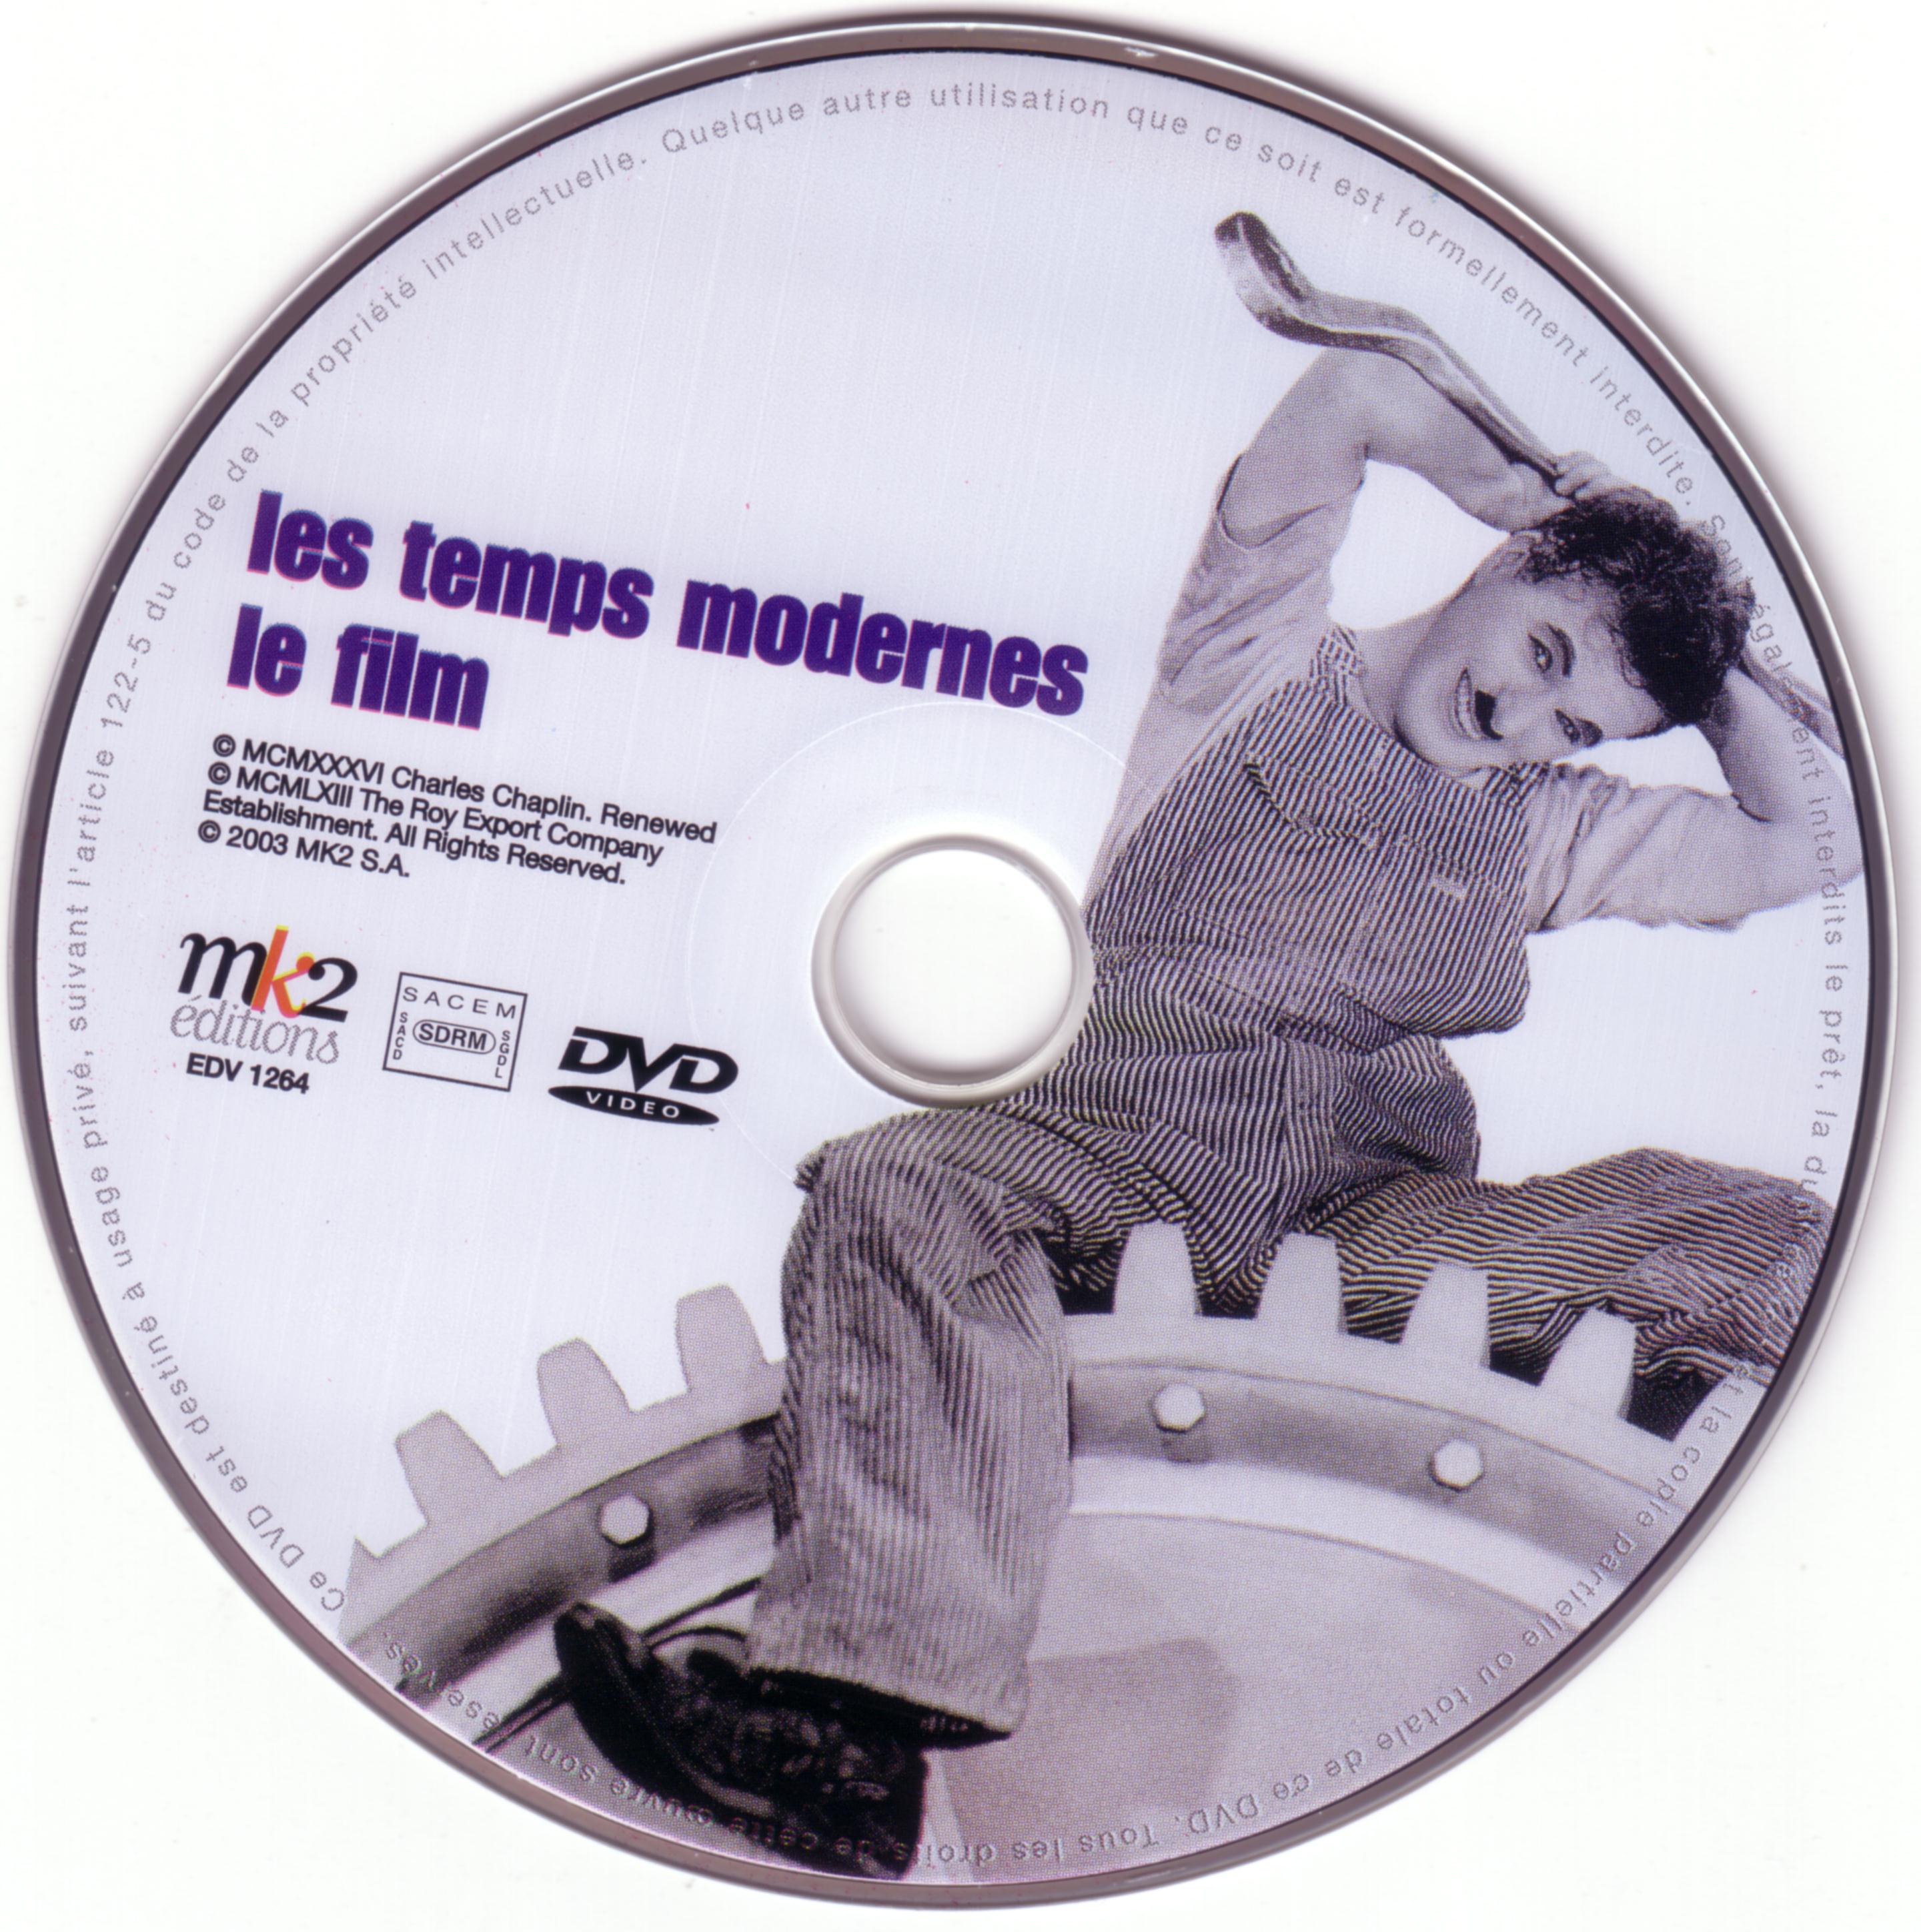 Les temps modernes DISC 2